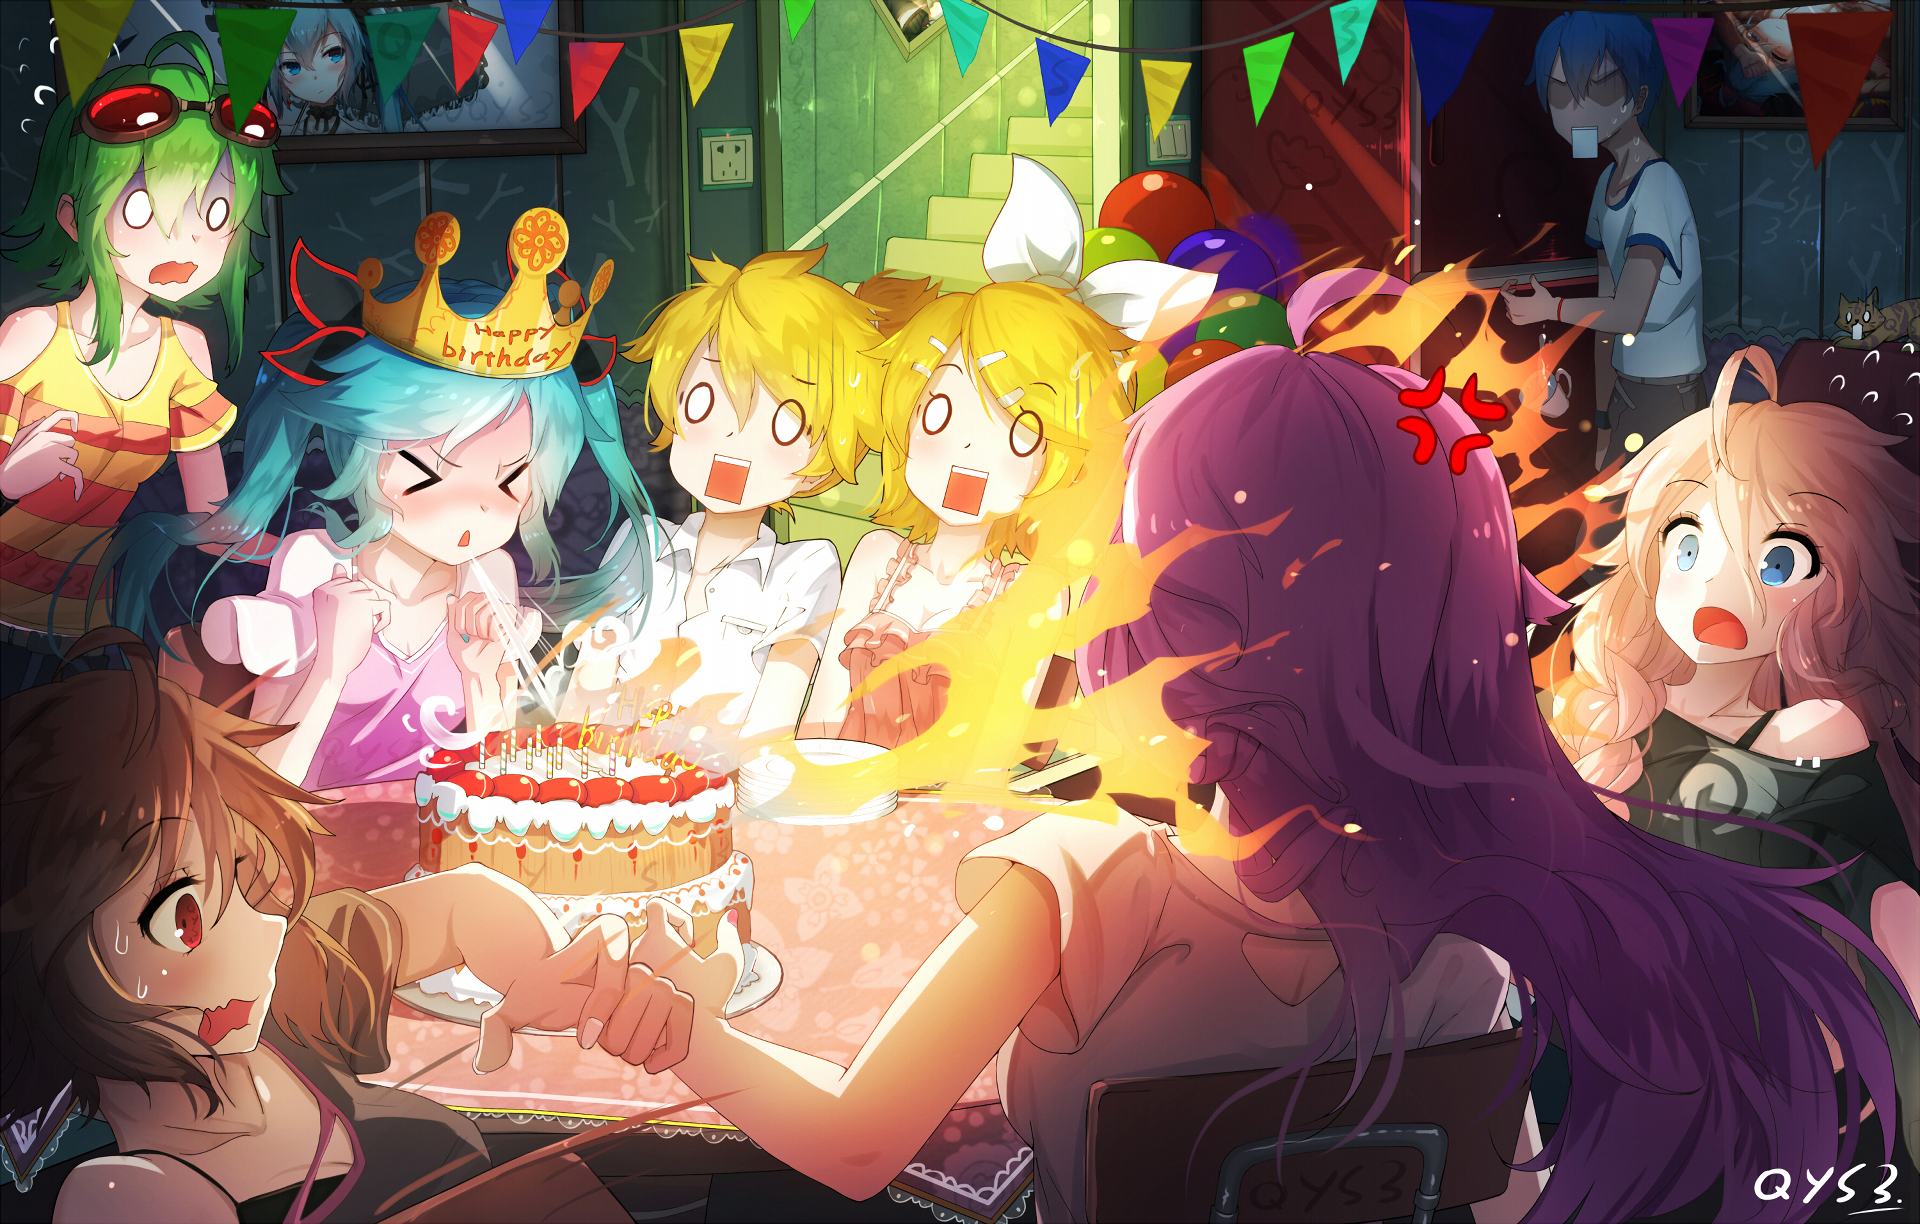 Anime Vocaloid Wallpaper Hd - Vocaloid Birthday , HD Wallpaper & Backgrounds